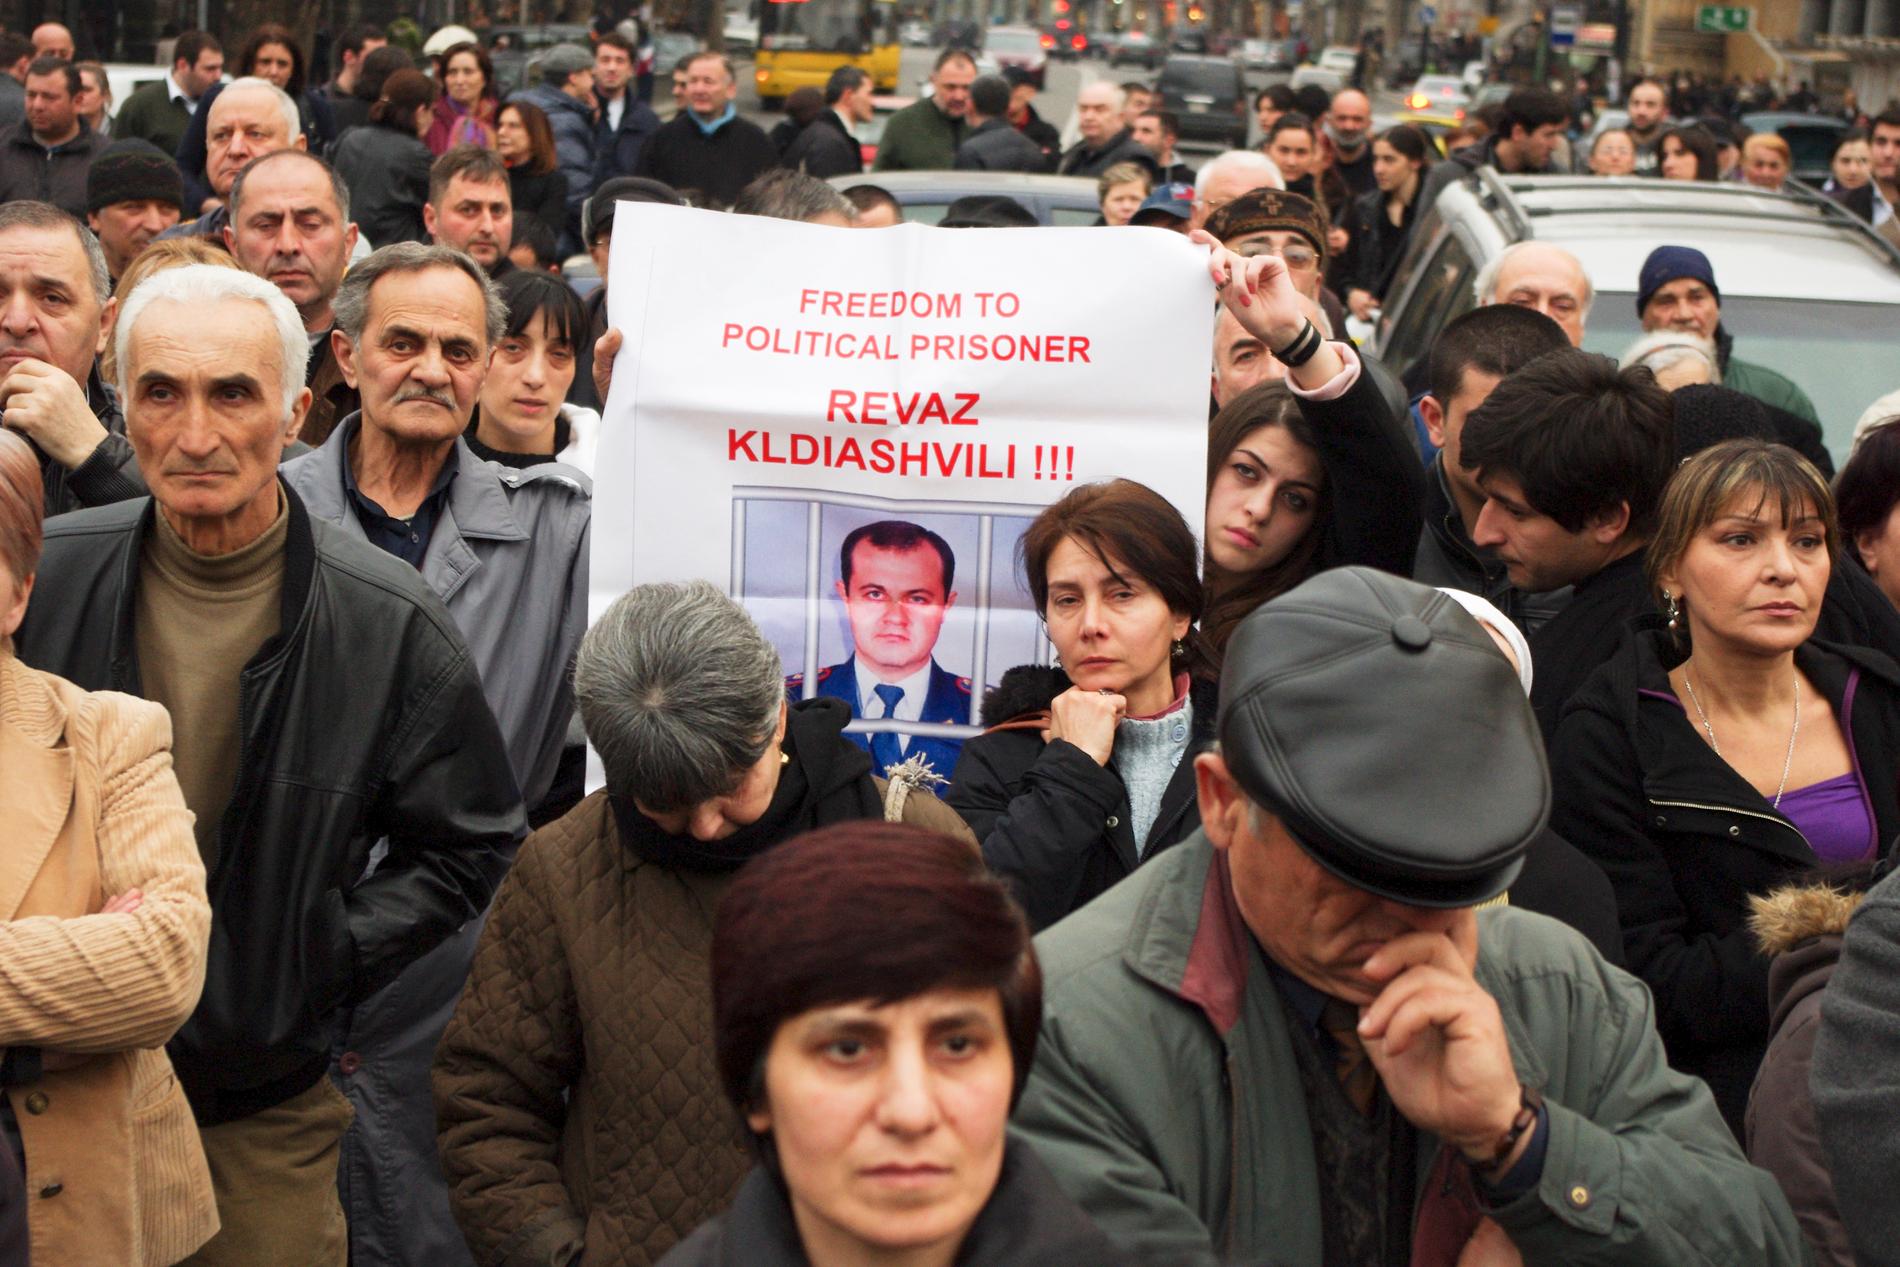 På bilden från Tbilisi i Georgien i mars 2011 syns människor demonstrera mot president Saakasjvili, som de menade gjorde landet till en polisstat.